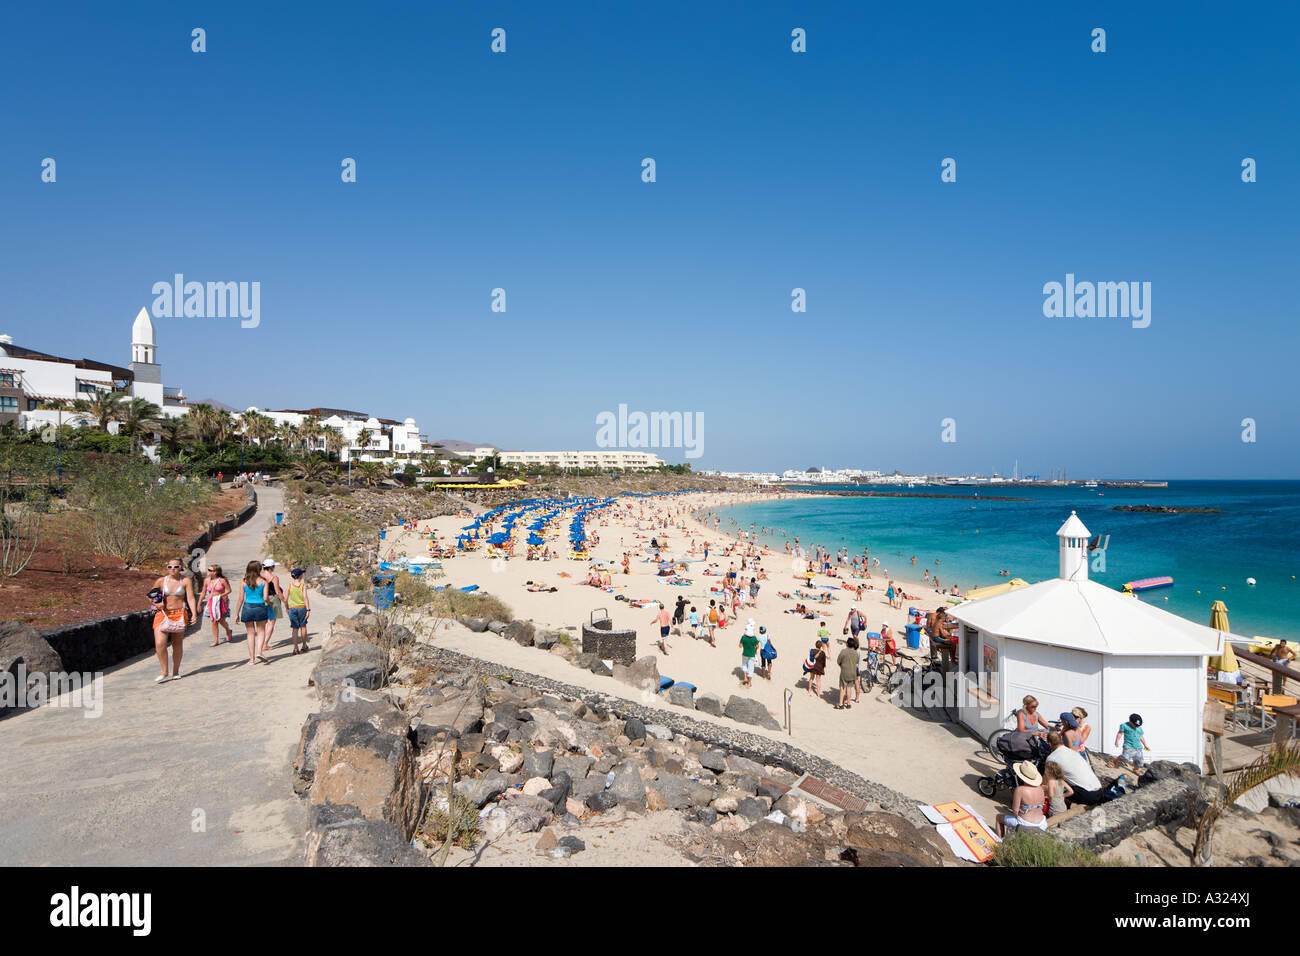 Promenade et plage principale, Playa Blanca, Lanzarote, îles Canaries, Espagne Banque D'Images